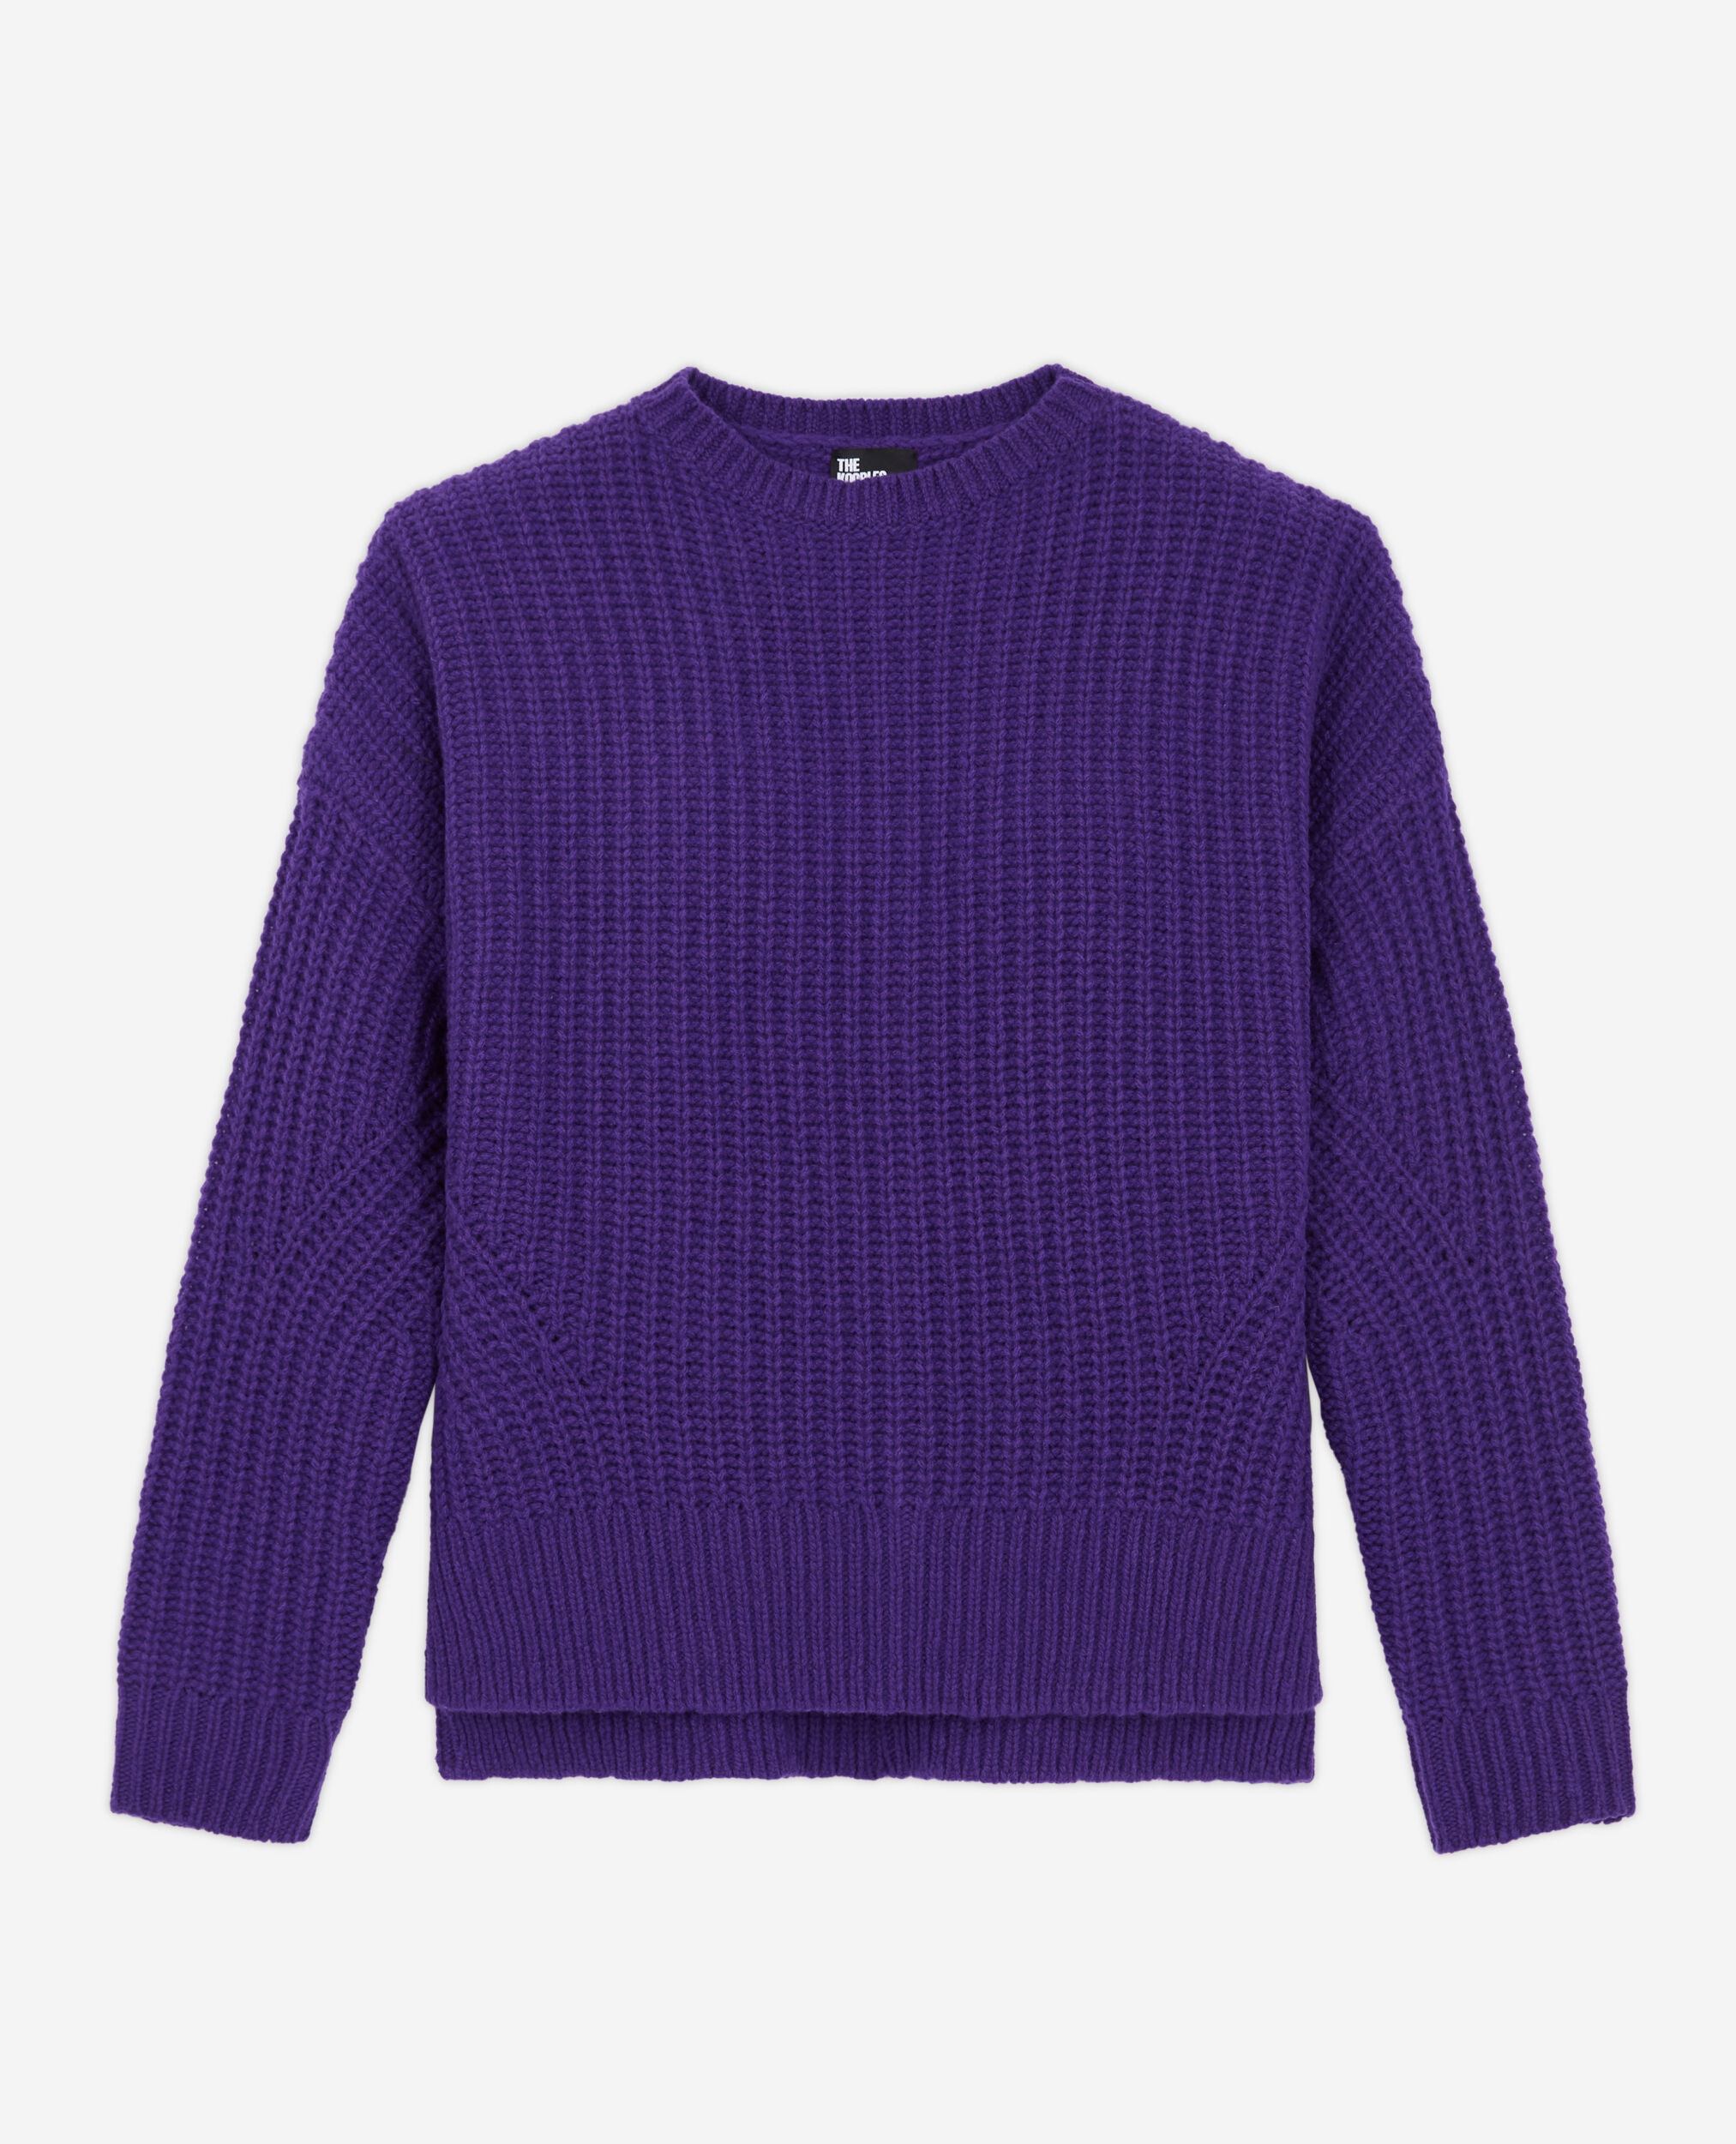 Pull en laine violet, PURPLE, hi-res image number null